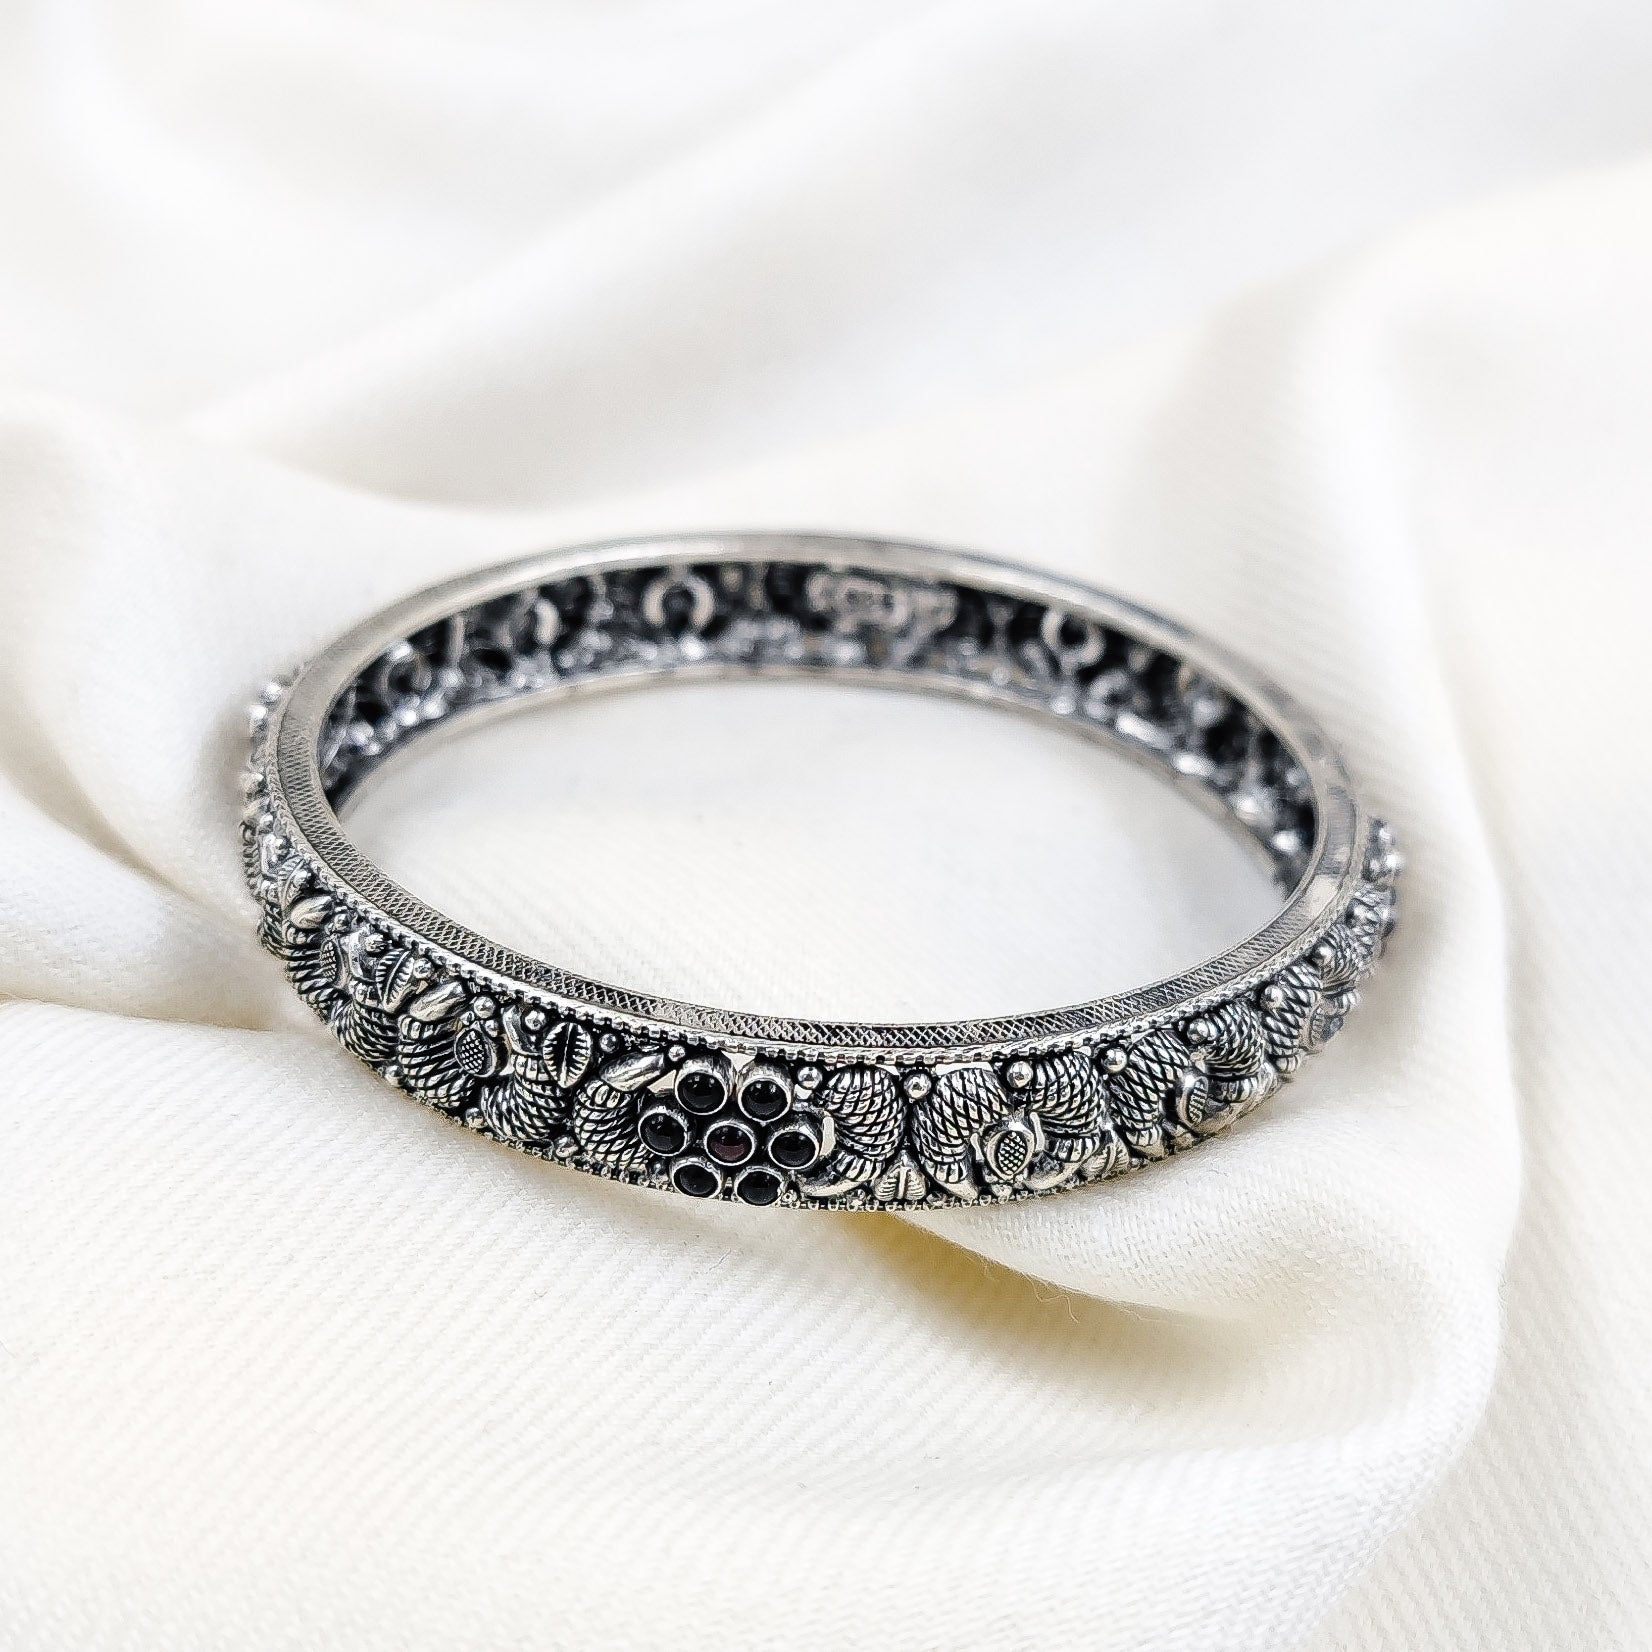 Silver Jewelry Bangle by Jauhri 92.5 Silver - Neelkanthi Bangle